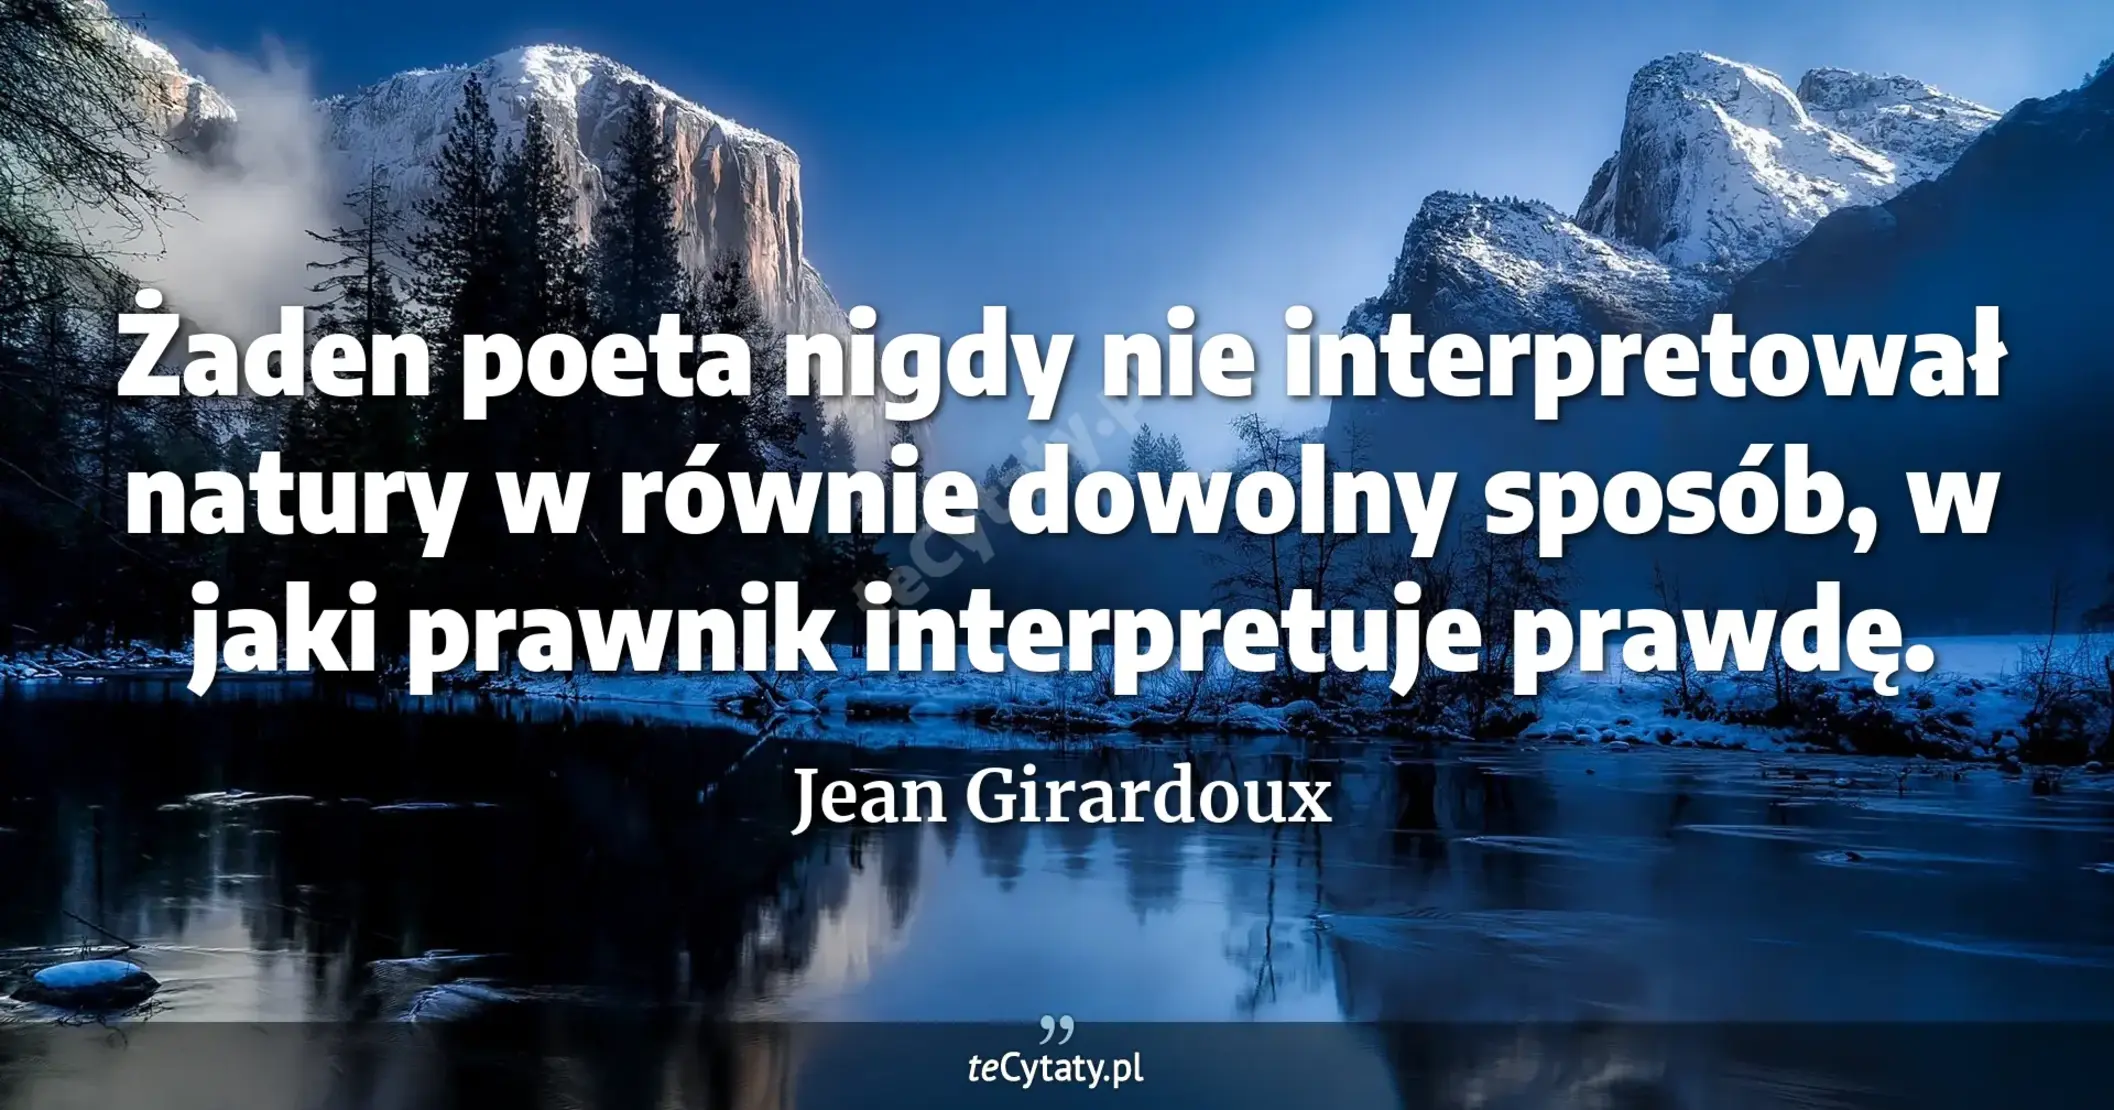 Żaden poeta nigdy nie interpretował natury w równie dowolny sposób, w jaki prawnik interpretuje prawdę. - Jean Girardoux